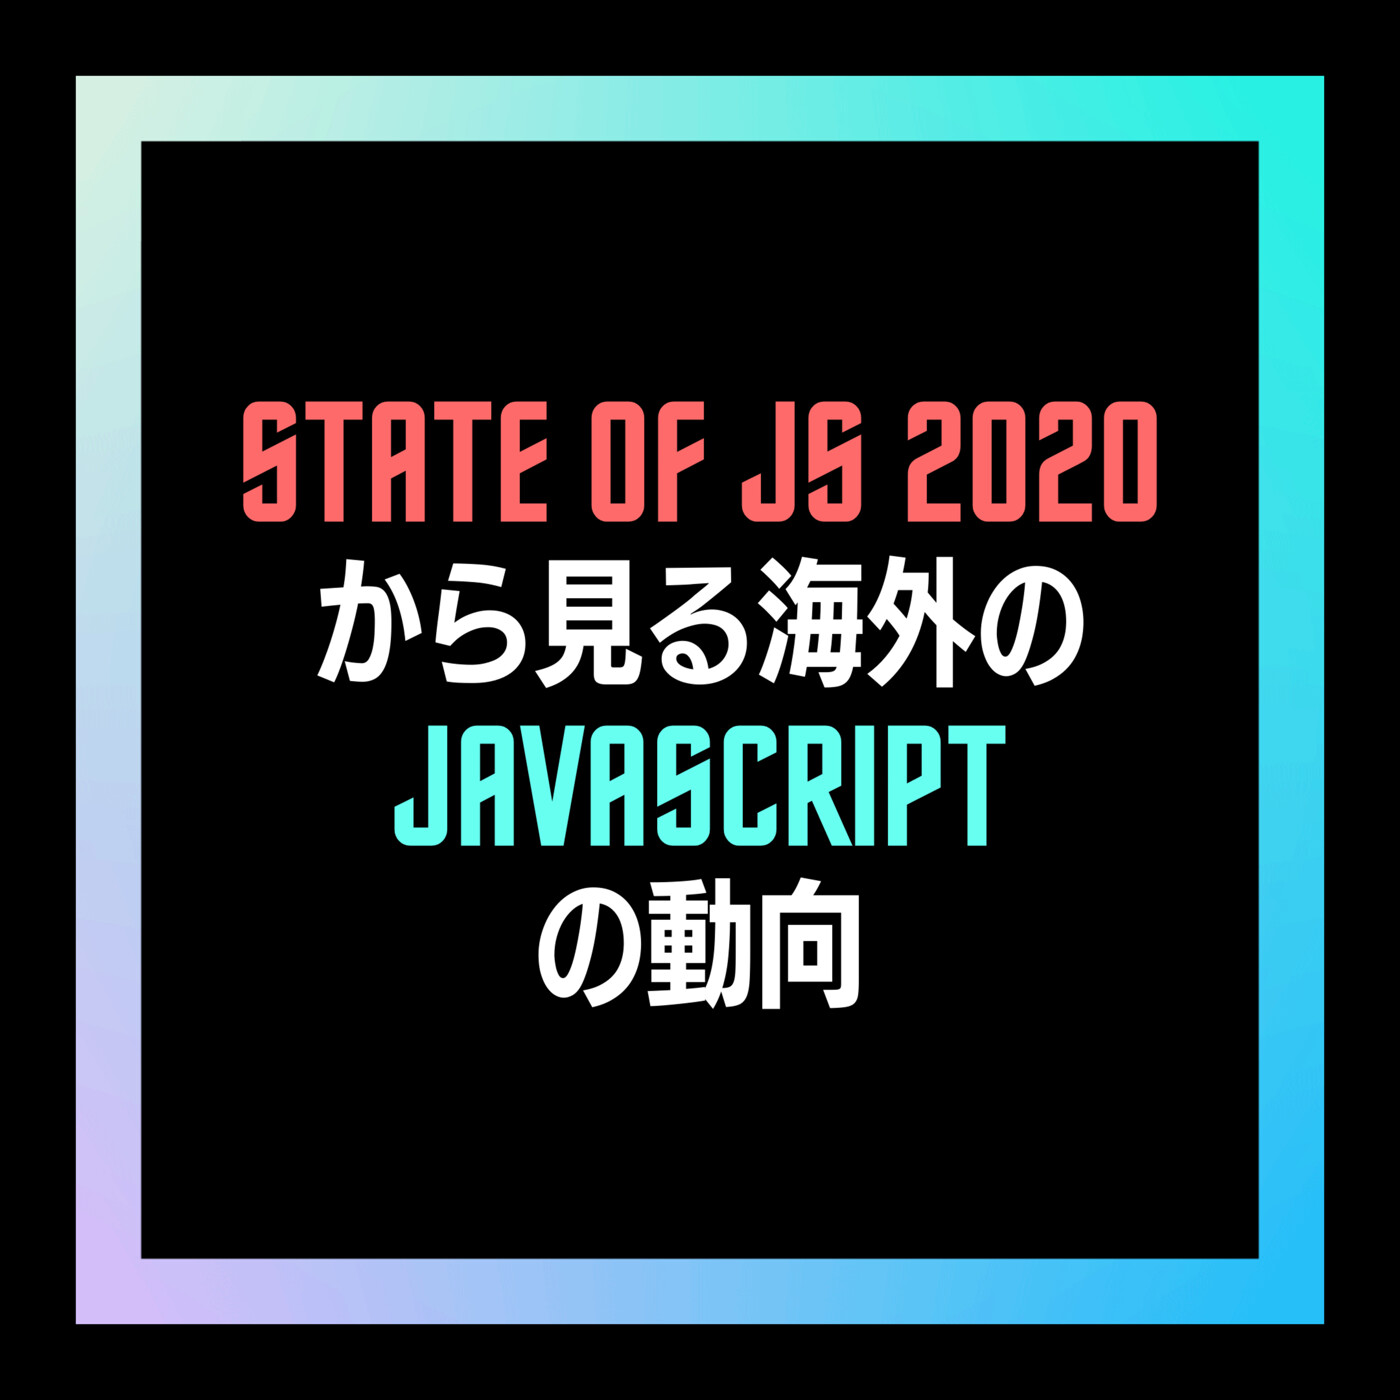 8- State of JS 2020から見る海外のJavaScriptの動向